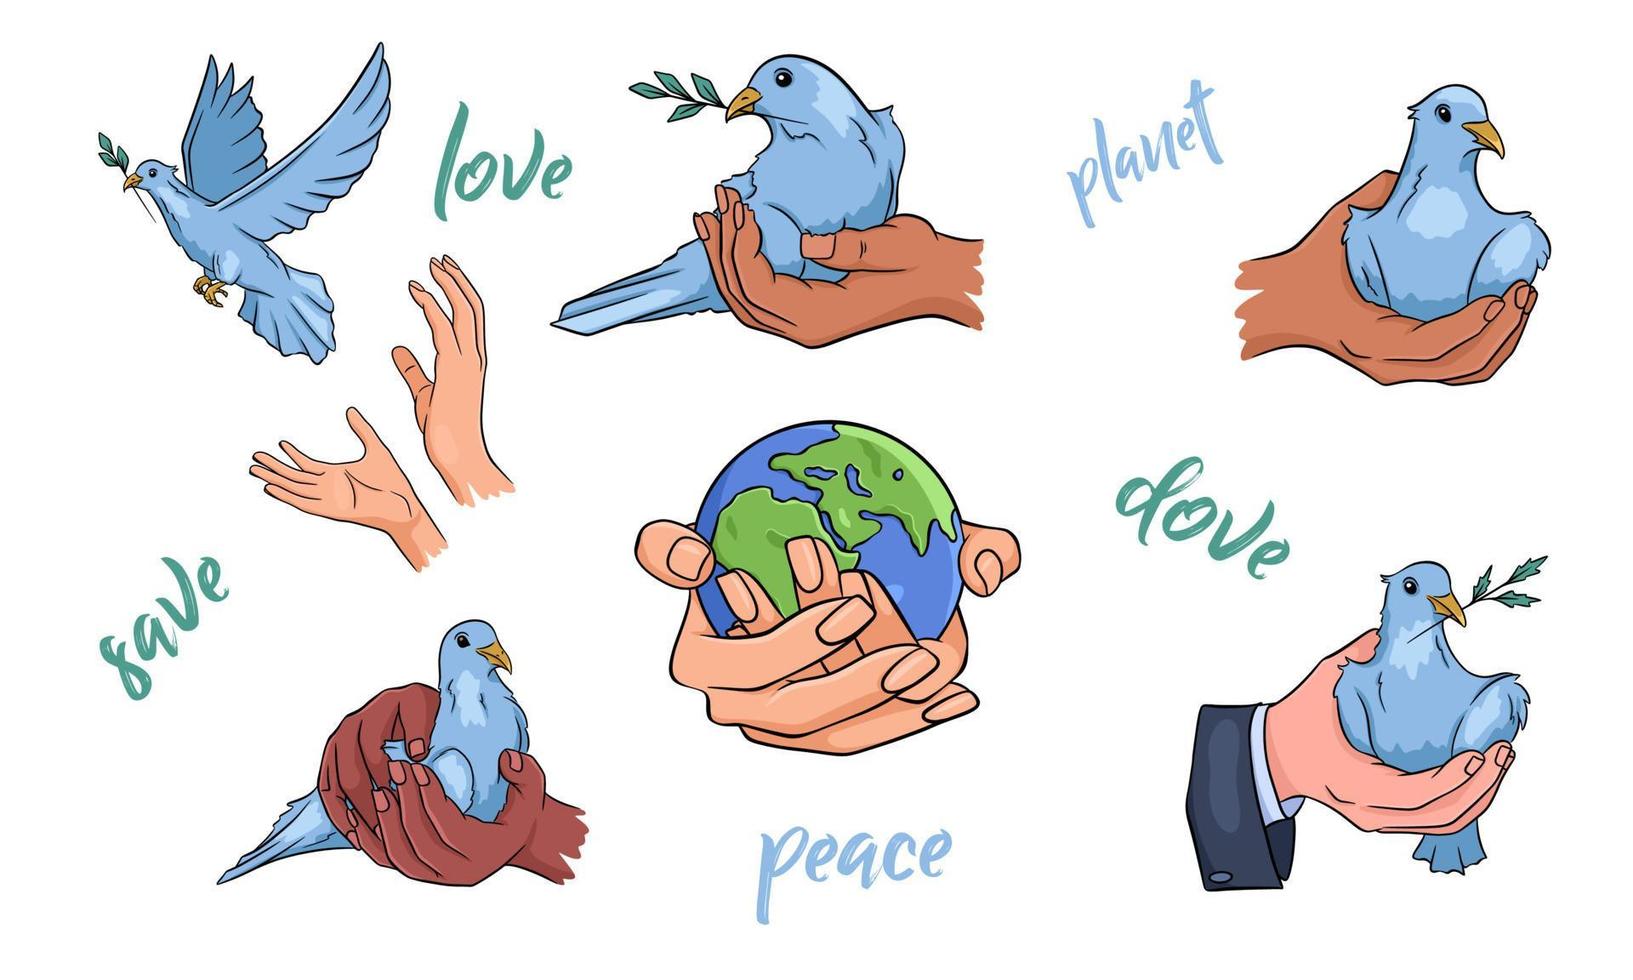 pomba com um galho no bico. pombas na mão. vamos proteger o planeta. paz mundial. conjunto de vetores. desenhado à mão. vetor